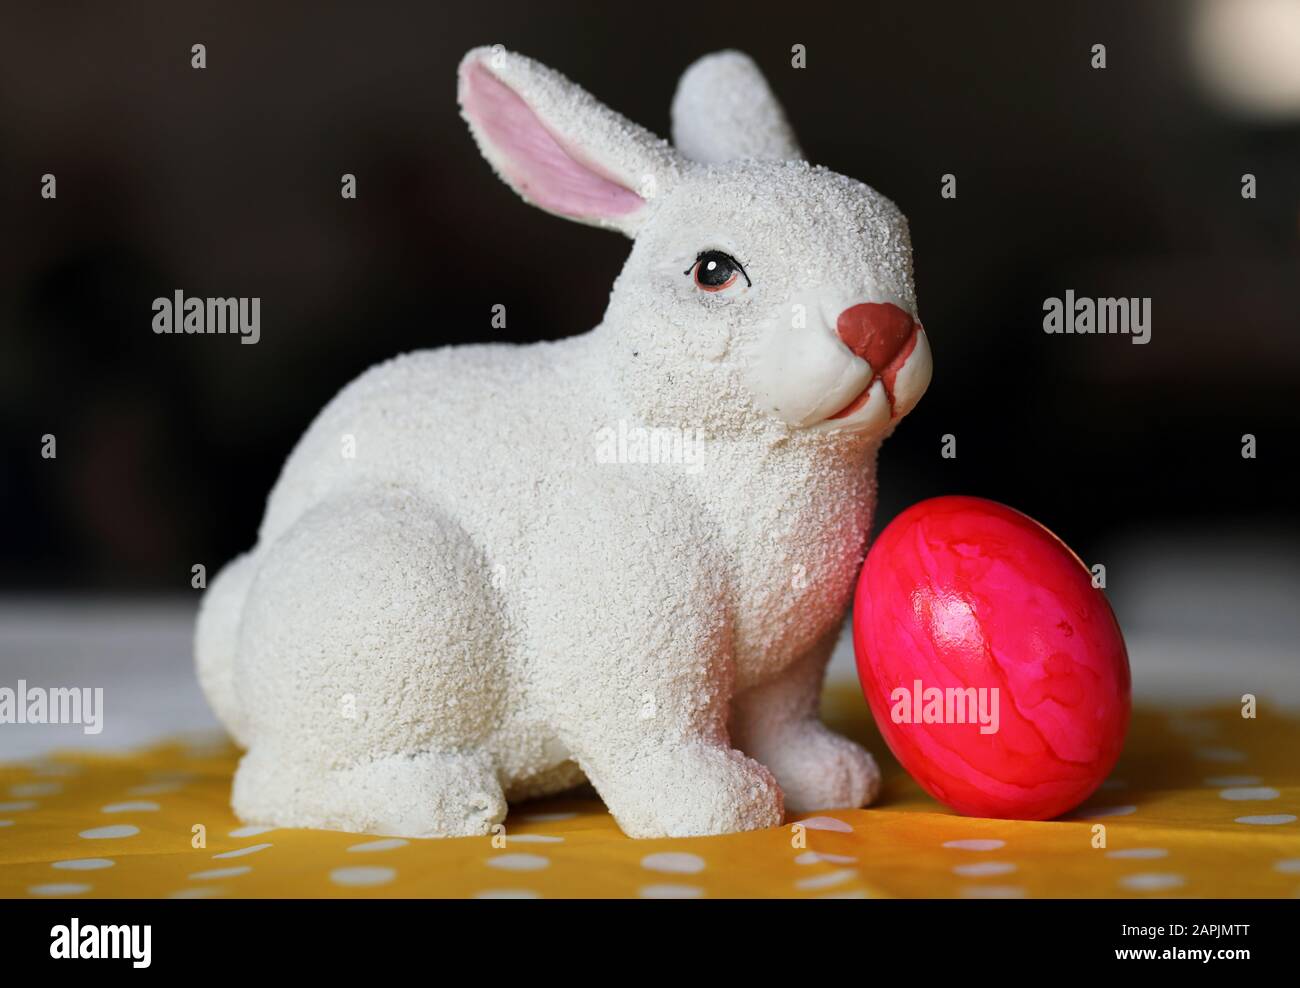 Decorazioni pasquali colorate e gioiose su un tavolo. Immagine a colori closeup di una figura bianca di coniglietto di Pasqua in ceramica e colorate uova di Pasqua dipinte. Foto Stock